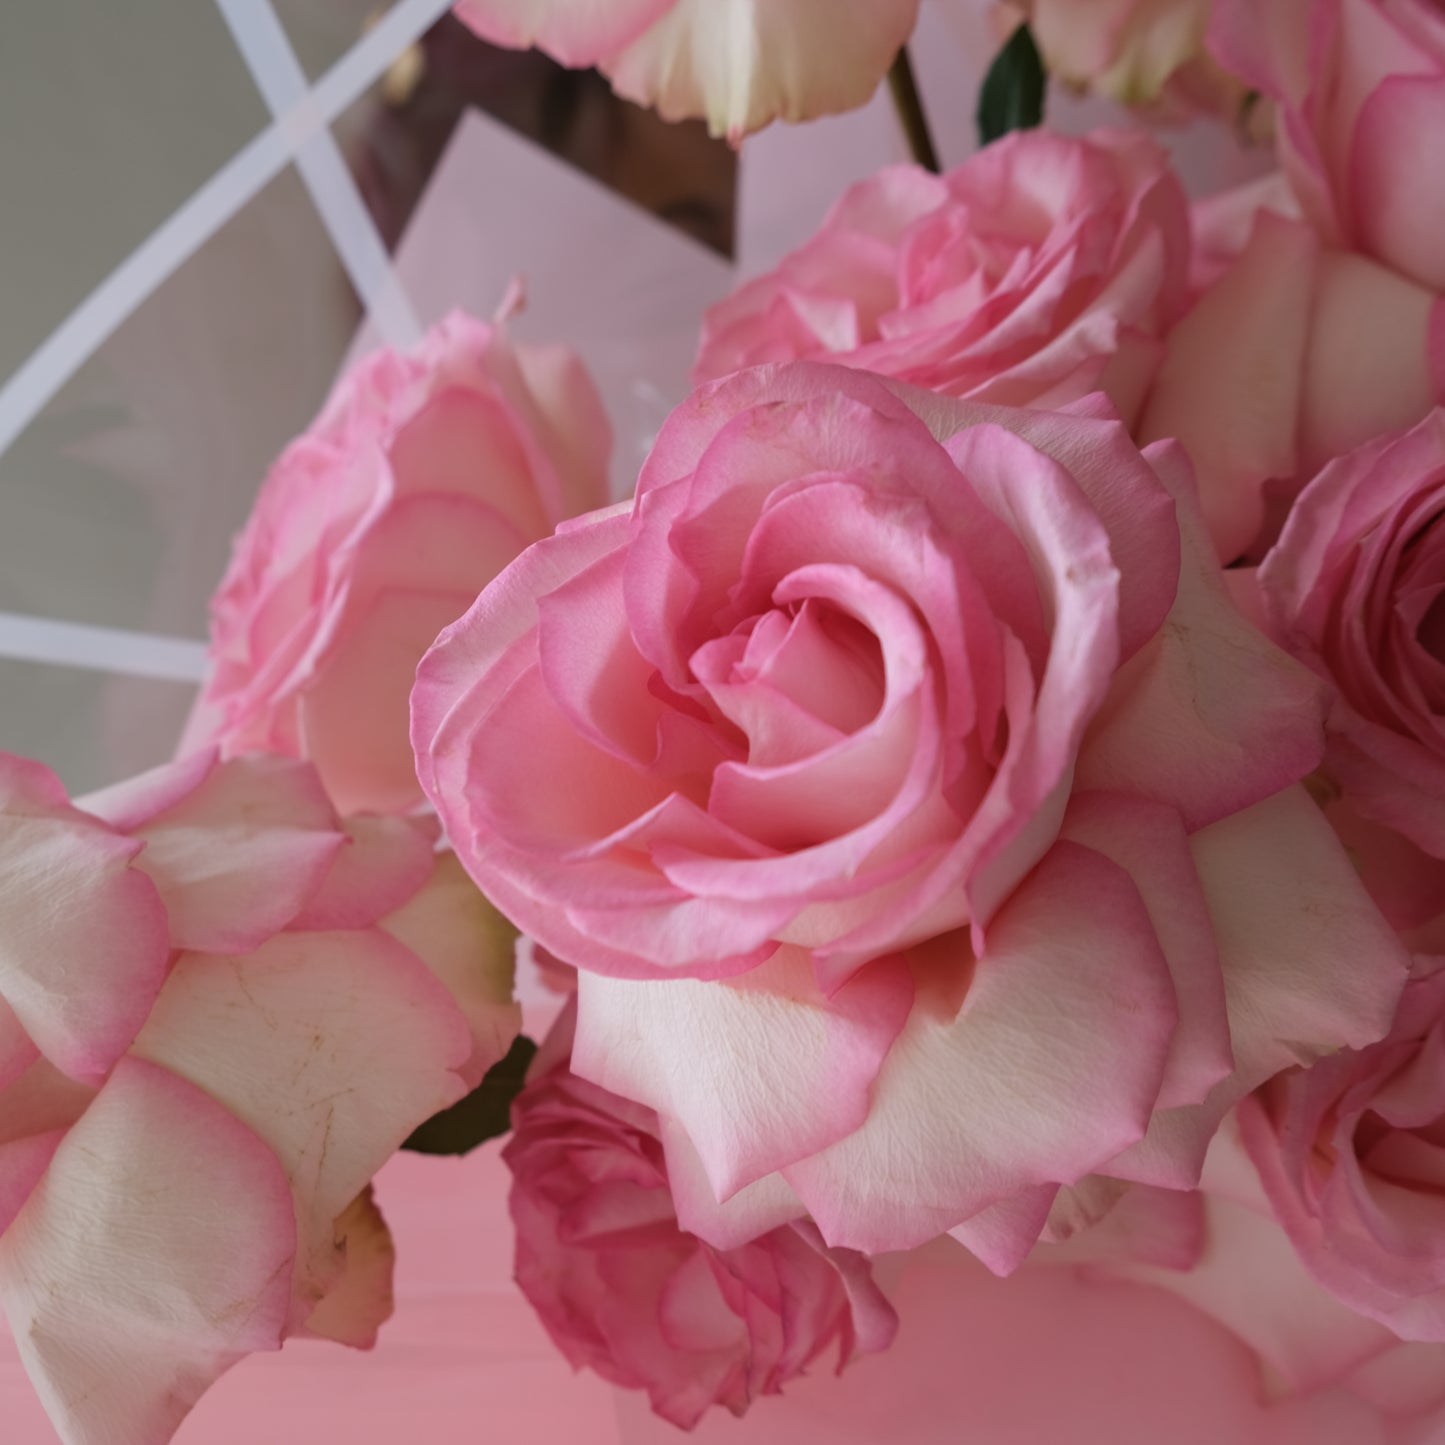 Rose Esperance Bouquet - Le Bliss Bouquet